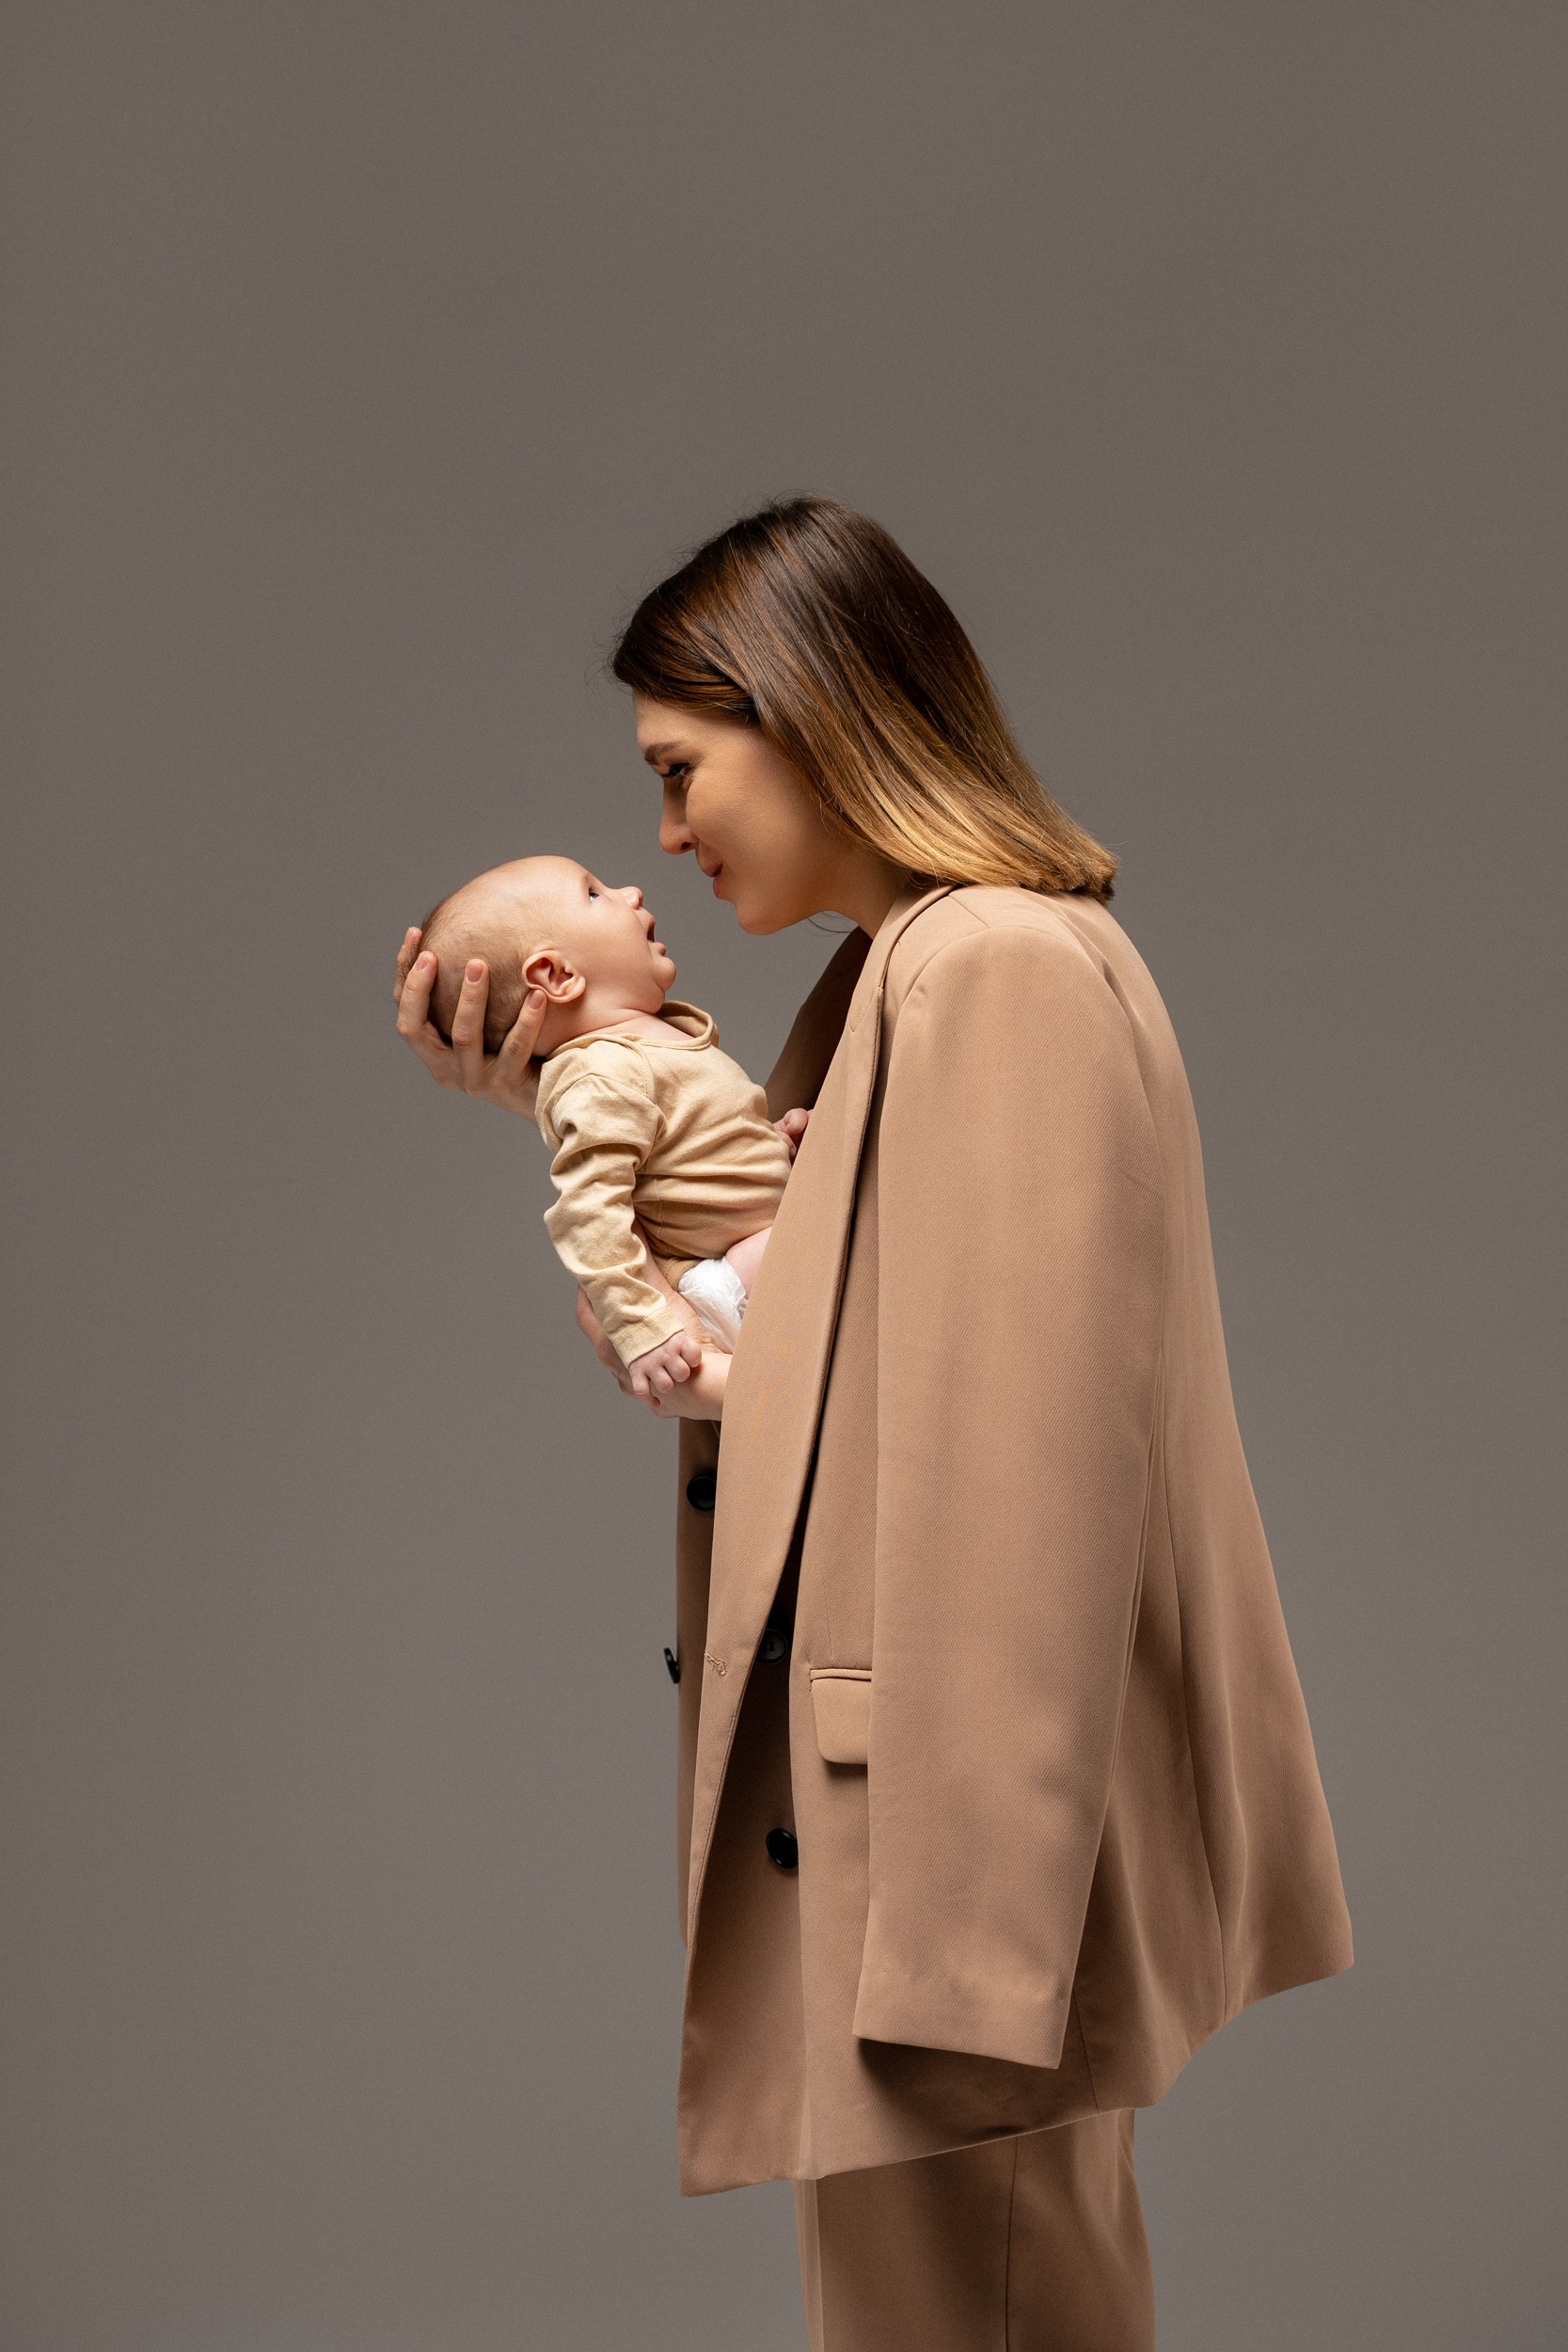 Fotografiranje novorojenčka v studiu: mama in novorojenček